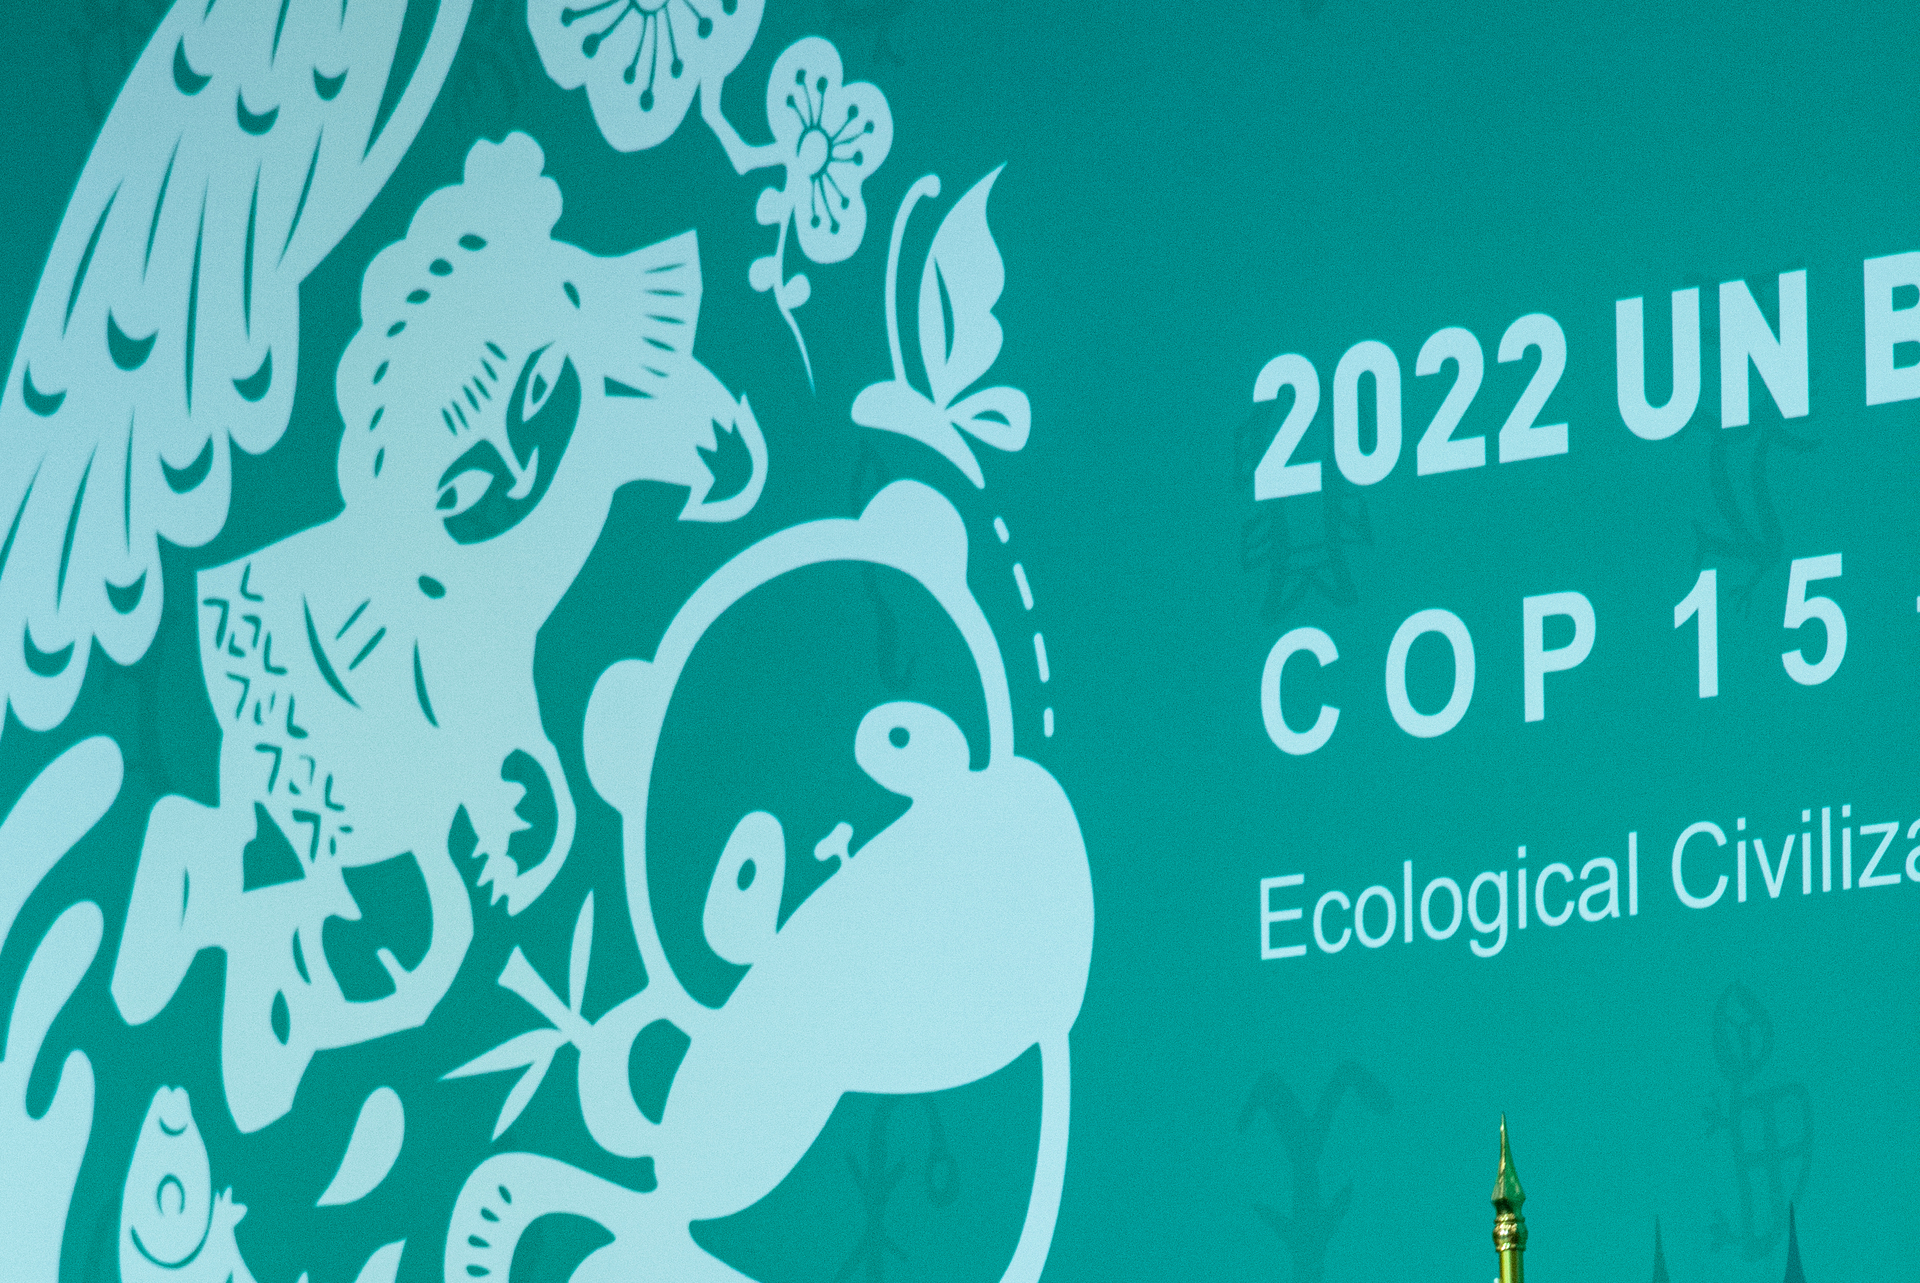 Activistas y grupos sociales aplauden acuerdo de biodiversidad en COP15